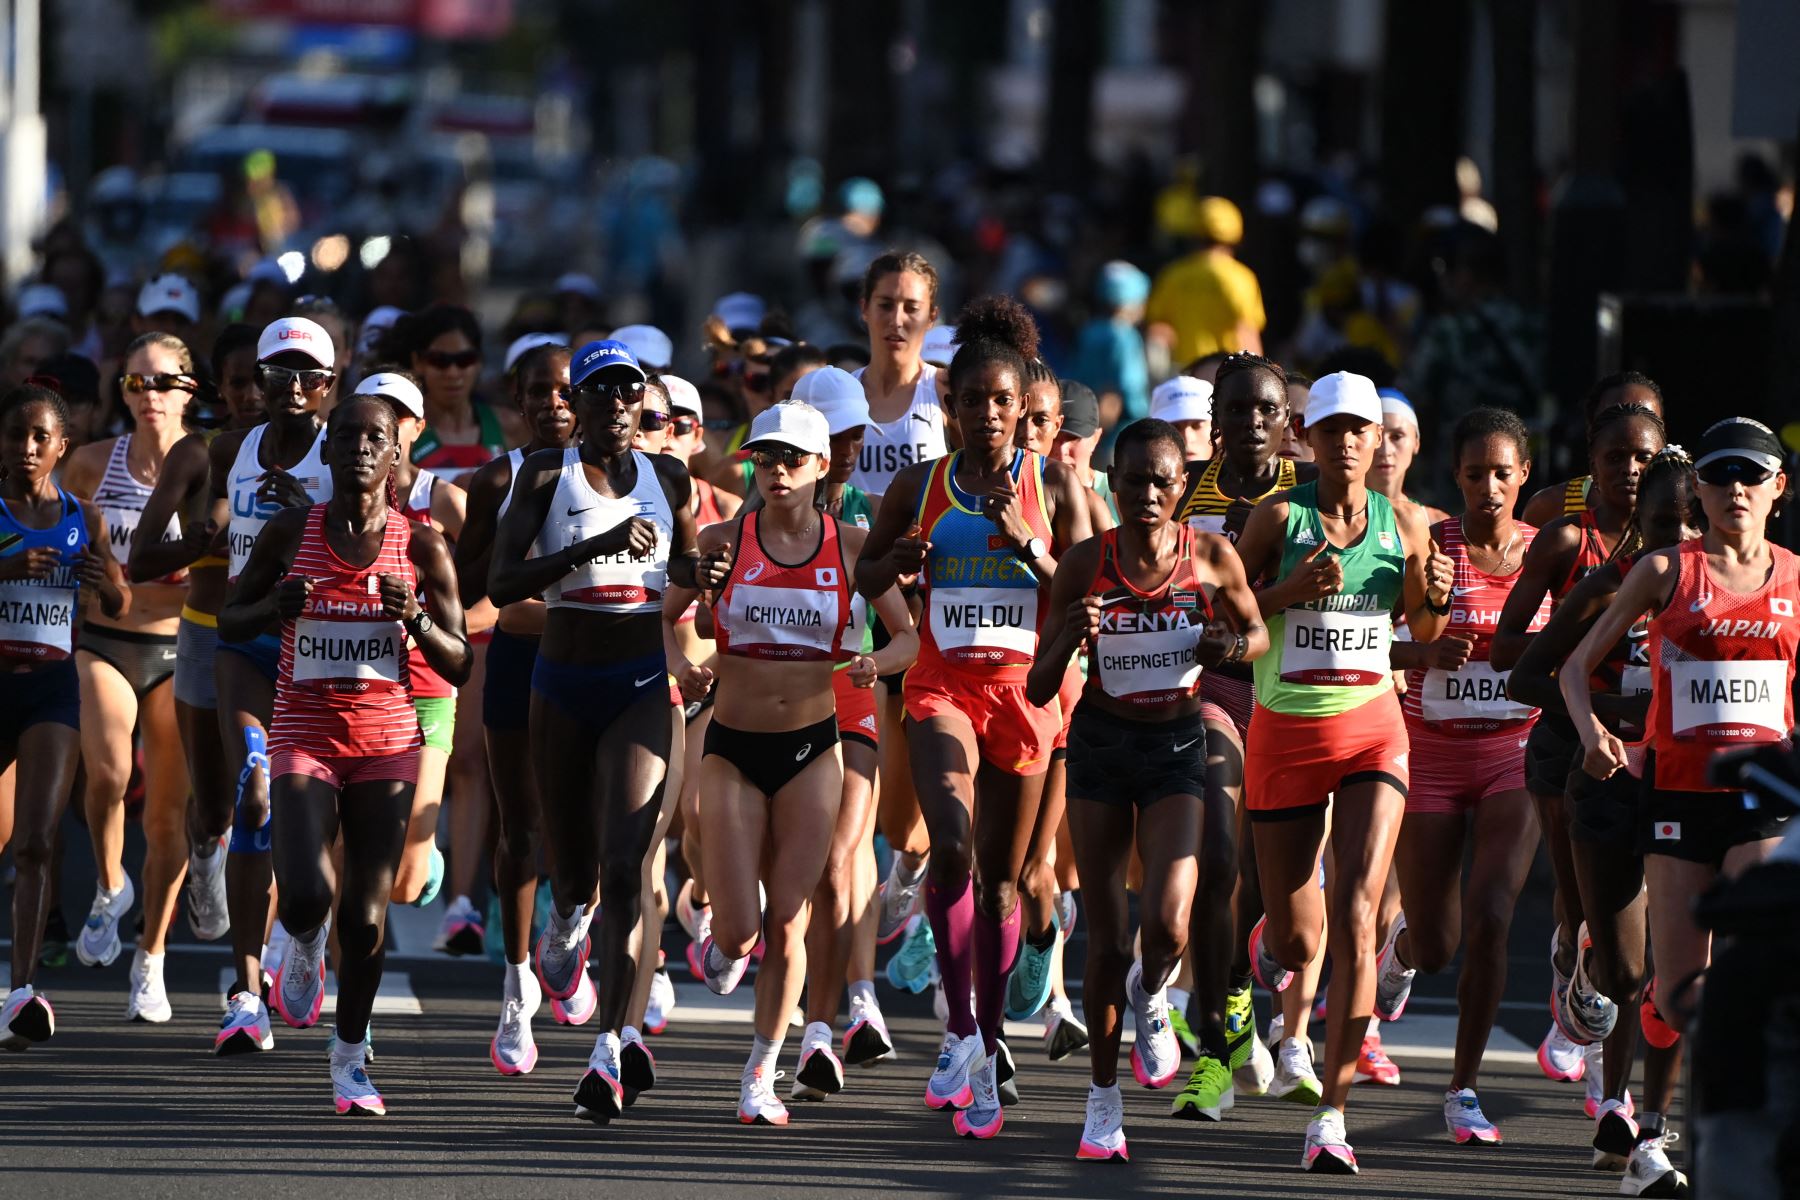 Los atletas compiten en la final del maratón femenino durante los Juegos Olímpicos de Tokio 2020 en Sapporo.
Foto: AFP